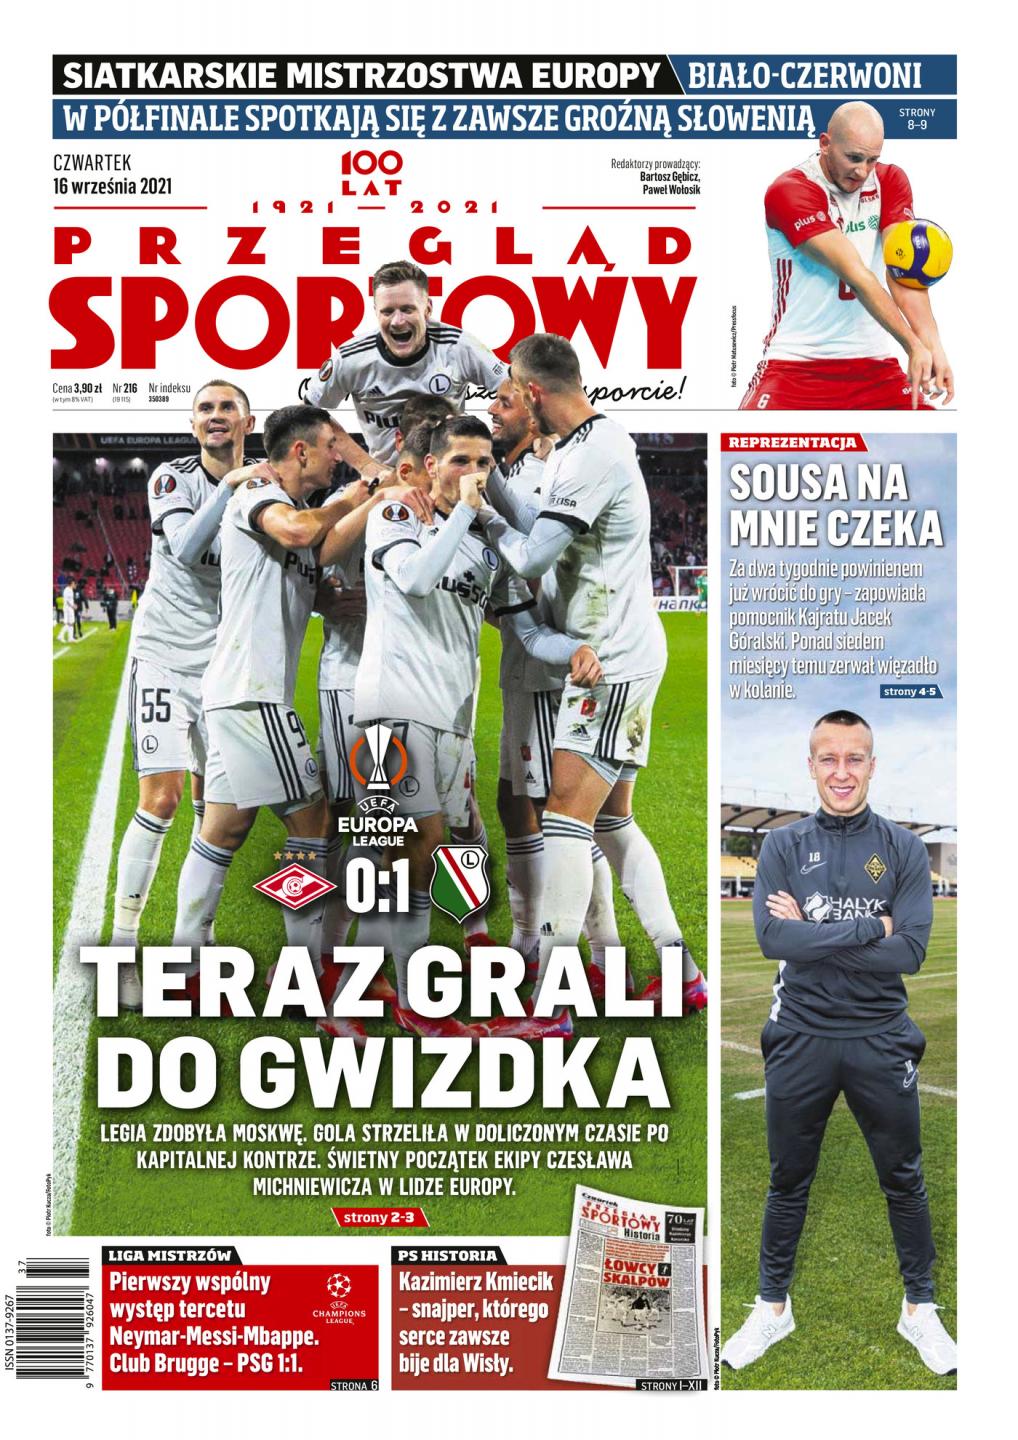 Okładka Przegląd Sportowy po meczu Spartak Moskwa - Legia Warszawa 0:1 (15.09.2021).